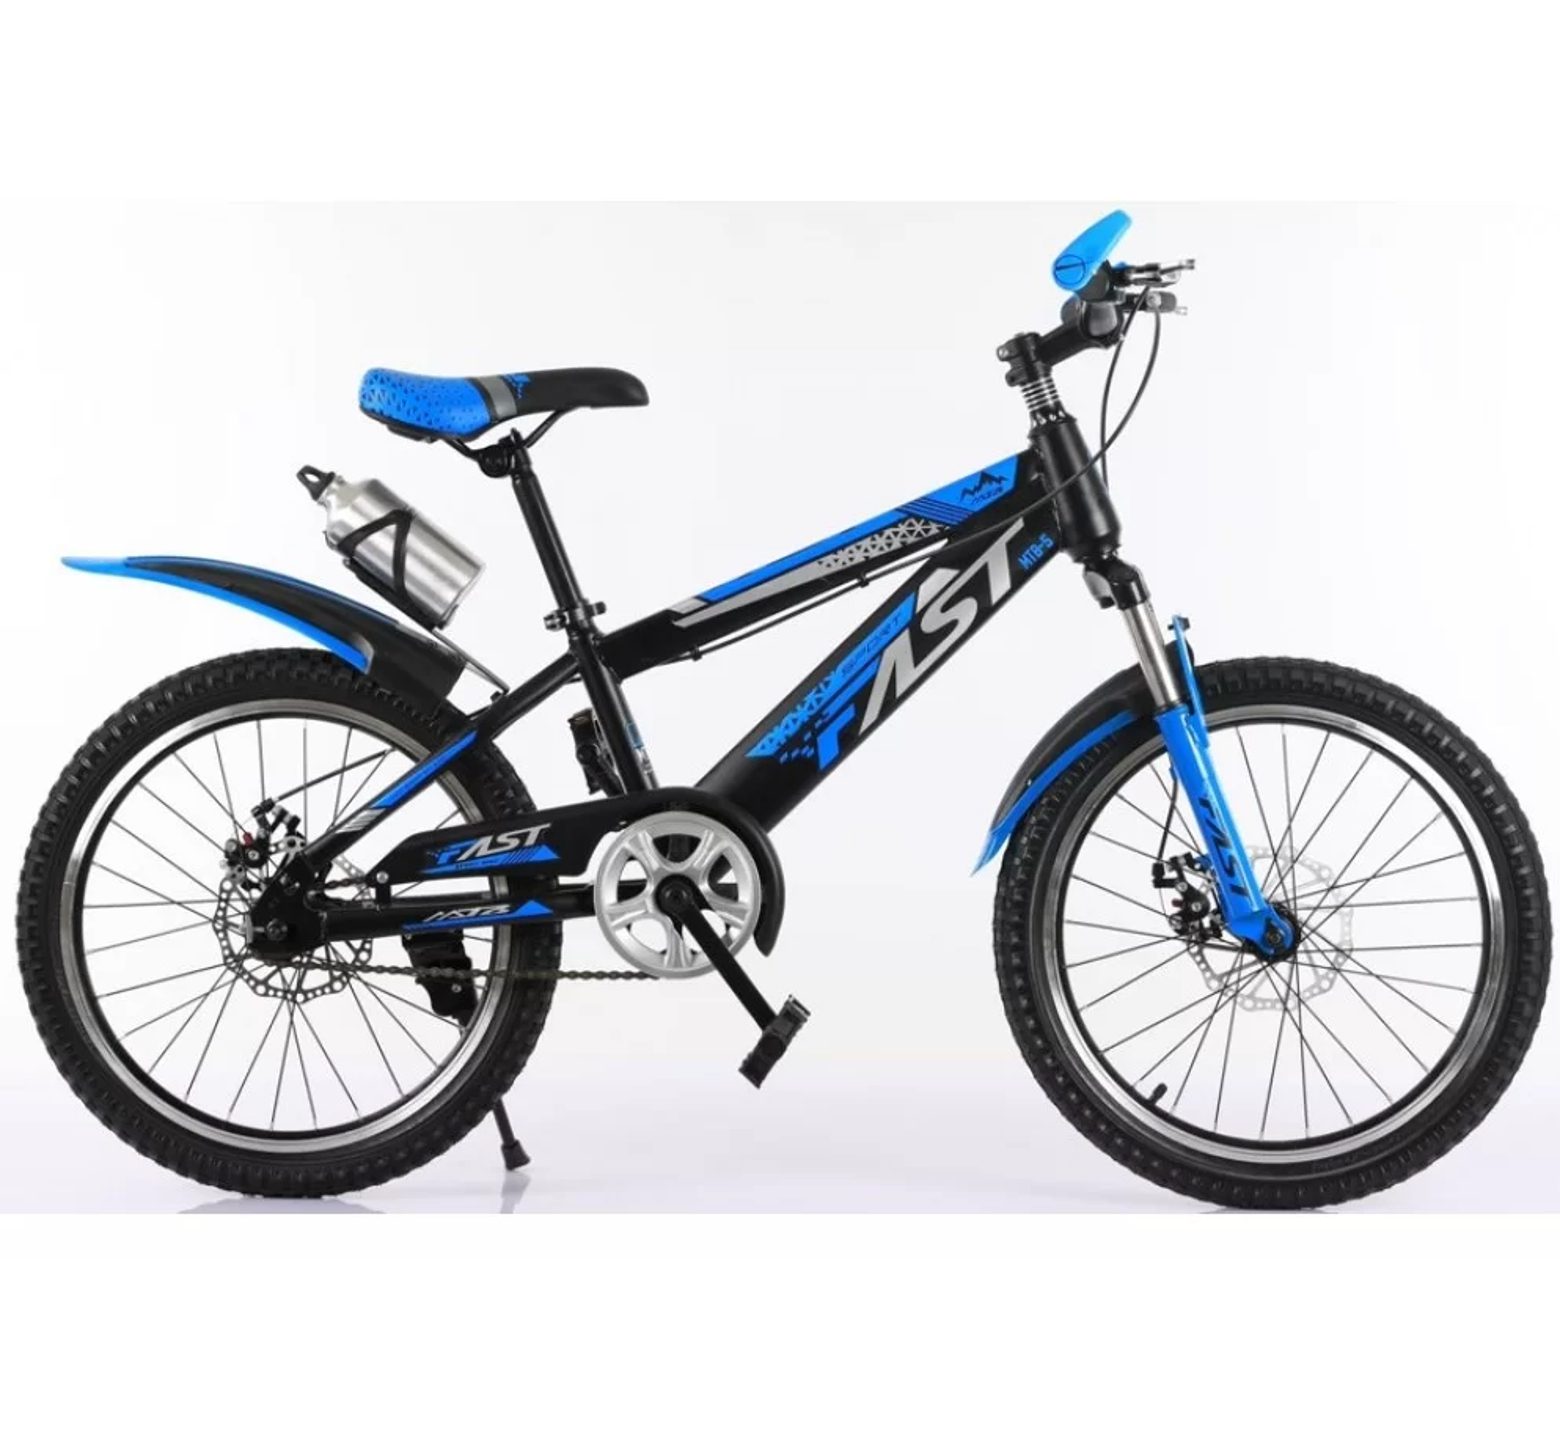 Ποδήλατο mountain 20 ιντσών με ταχύτητες δισκόφρενα και ανάρτηση σε μαύρο μπλε χρώμα 